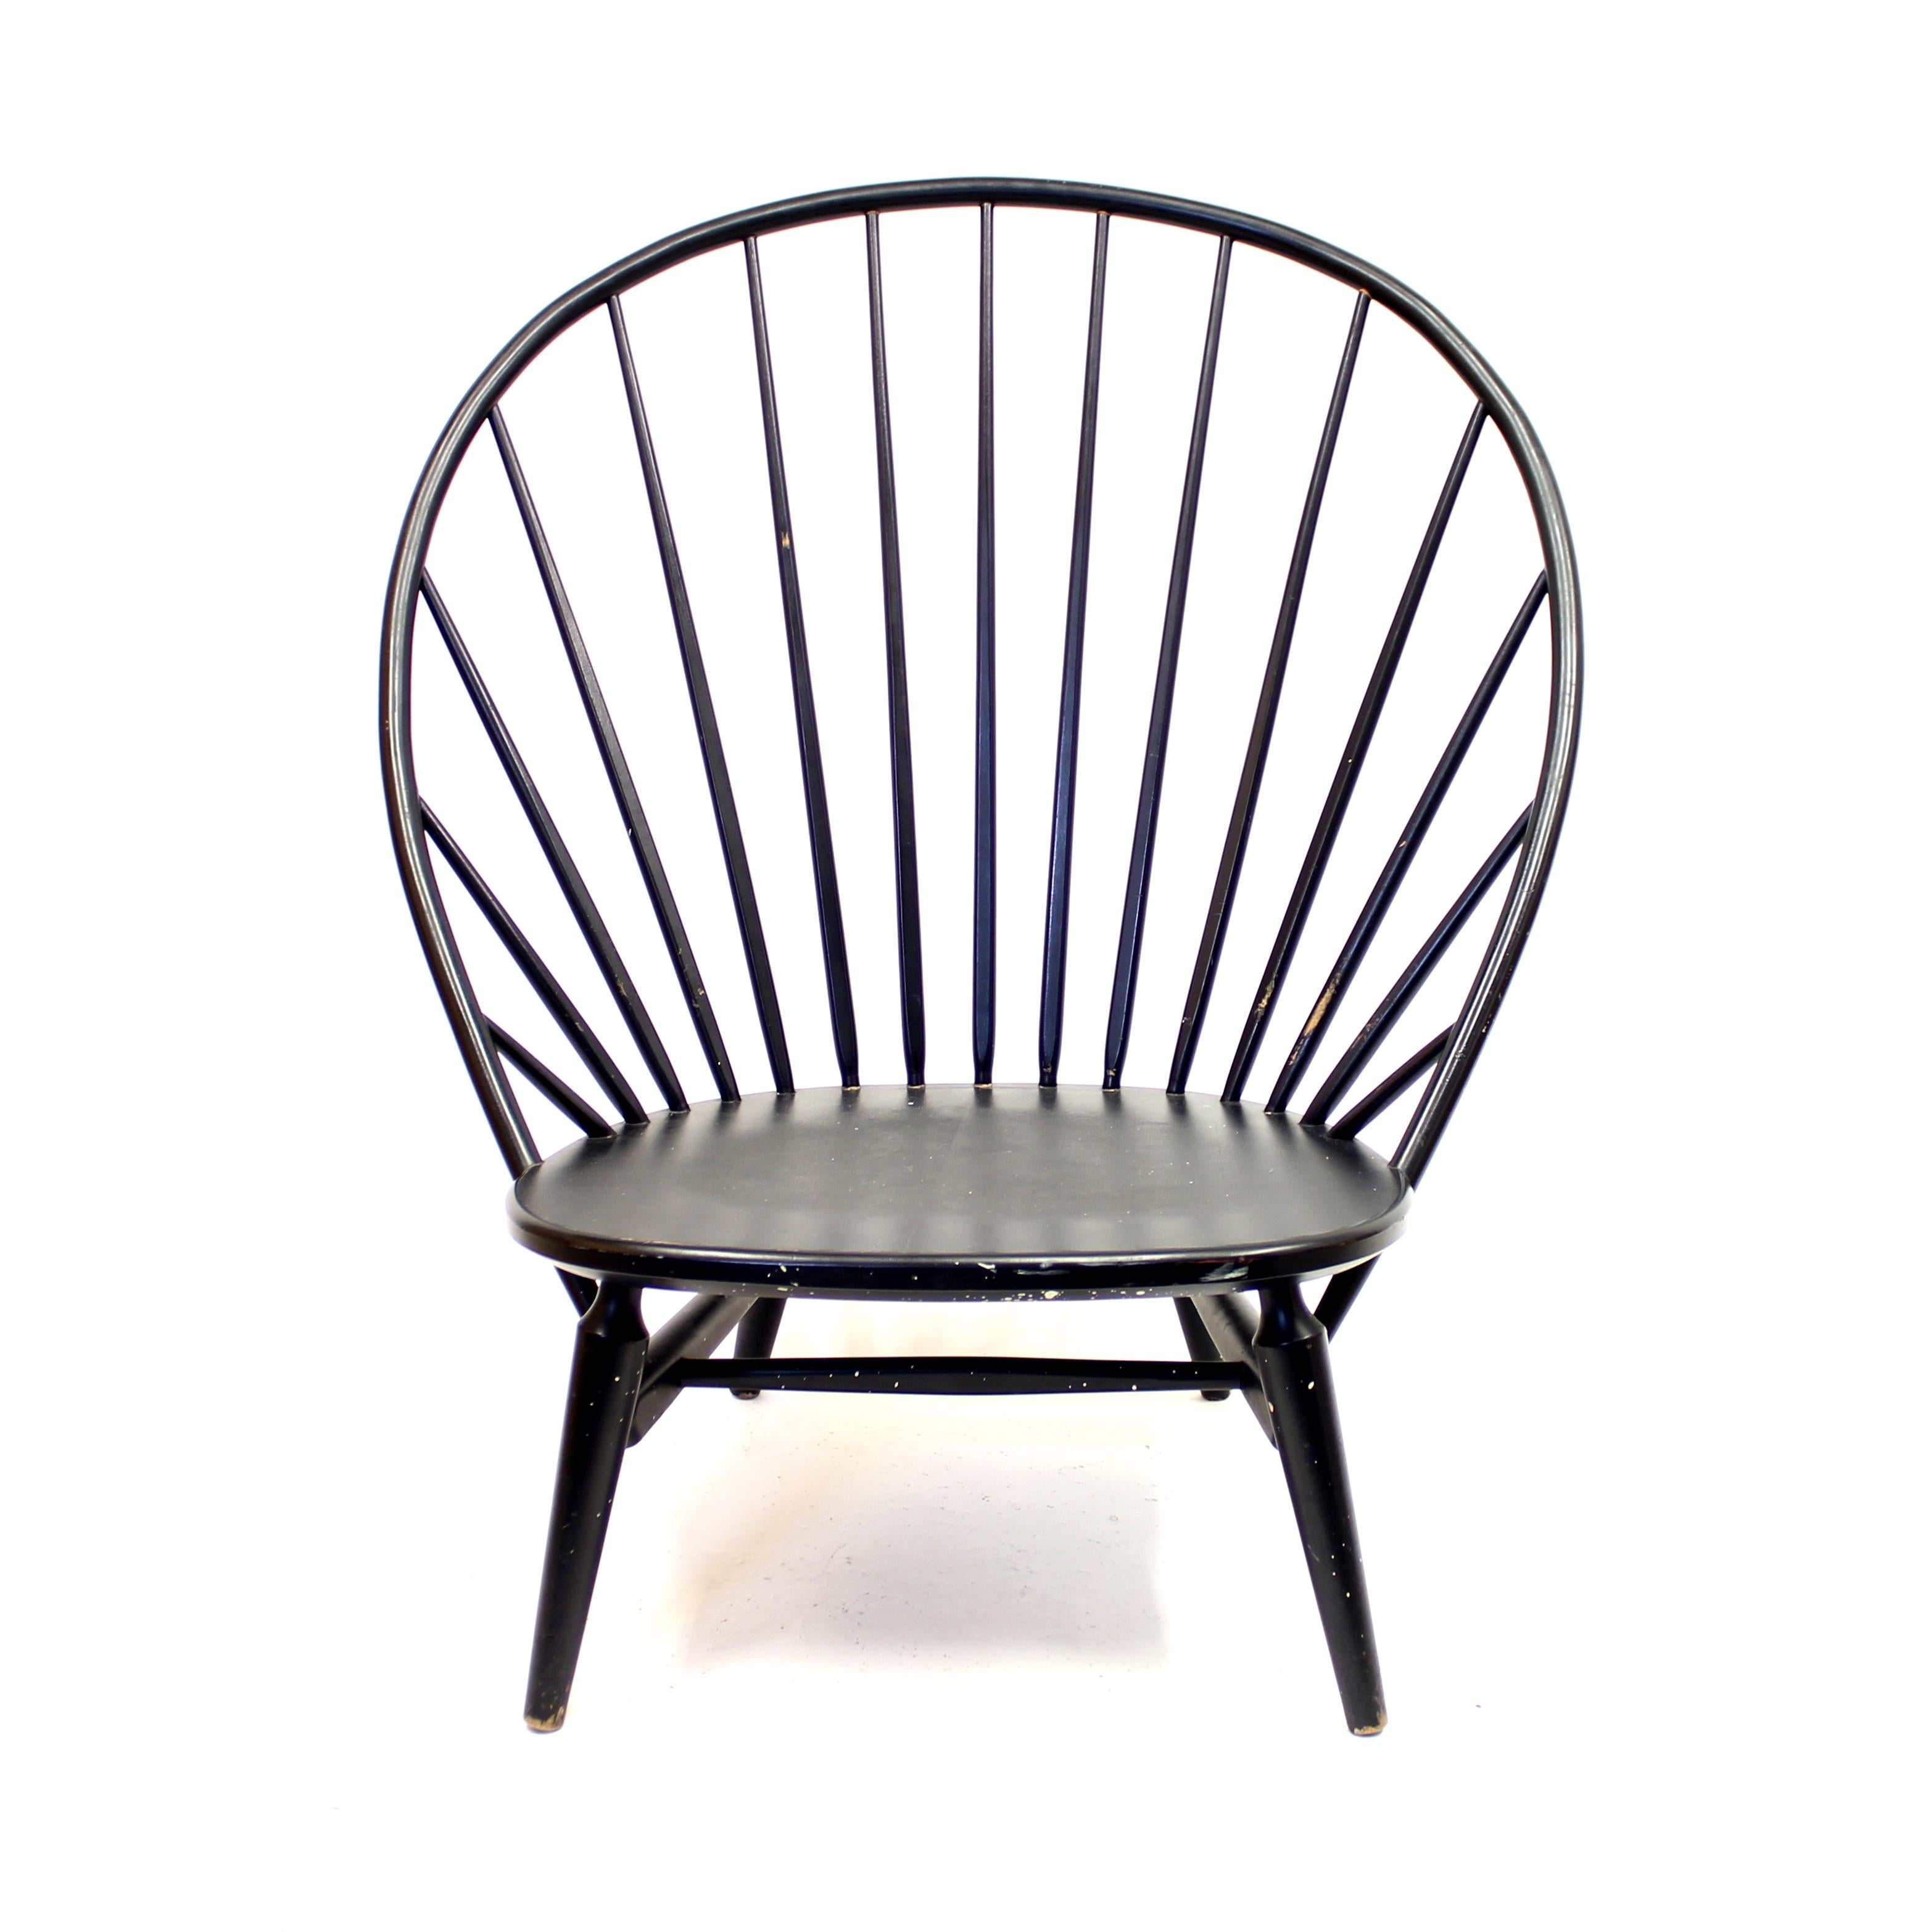 Sillón Bågen (El Arco en inglés) de madera lacada en negro original. Diseñado por Sven Engström y Gunnar Myrstrand en 1953 para Nässjö Stolfabrik. Un auténtico clásico del diseño sueco. Bastante raro hoy en día. Tiene la forma de la llamada silla